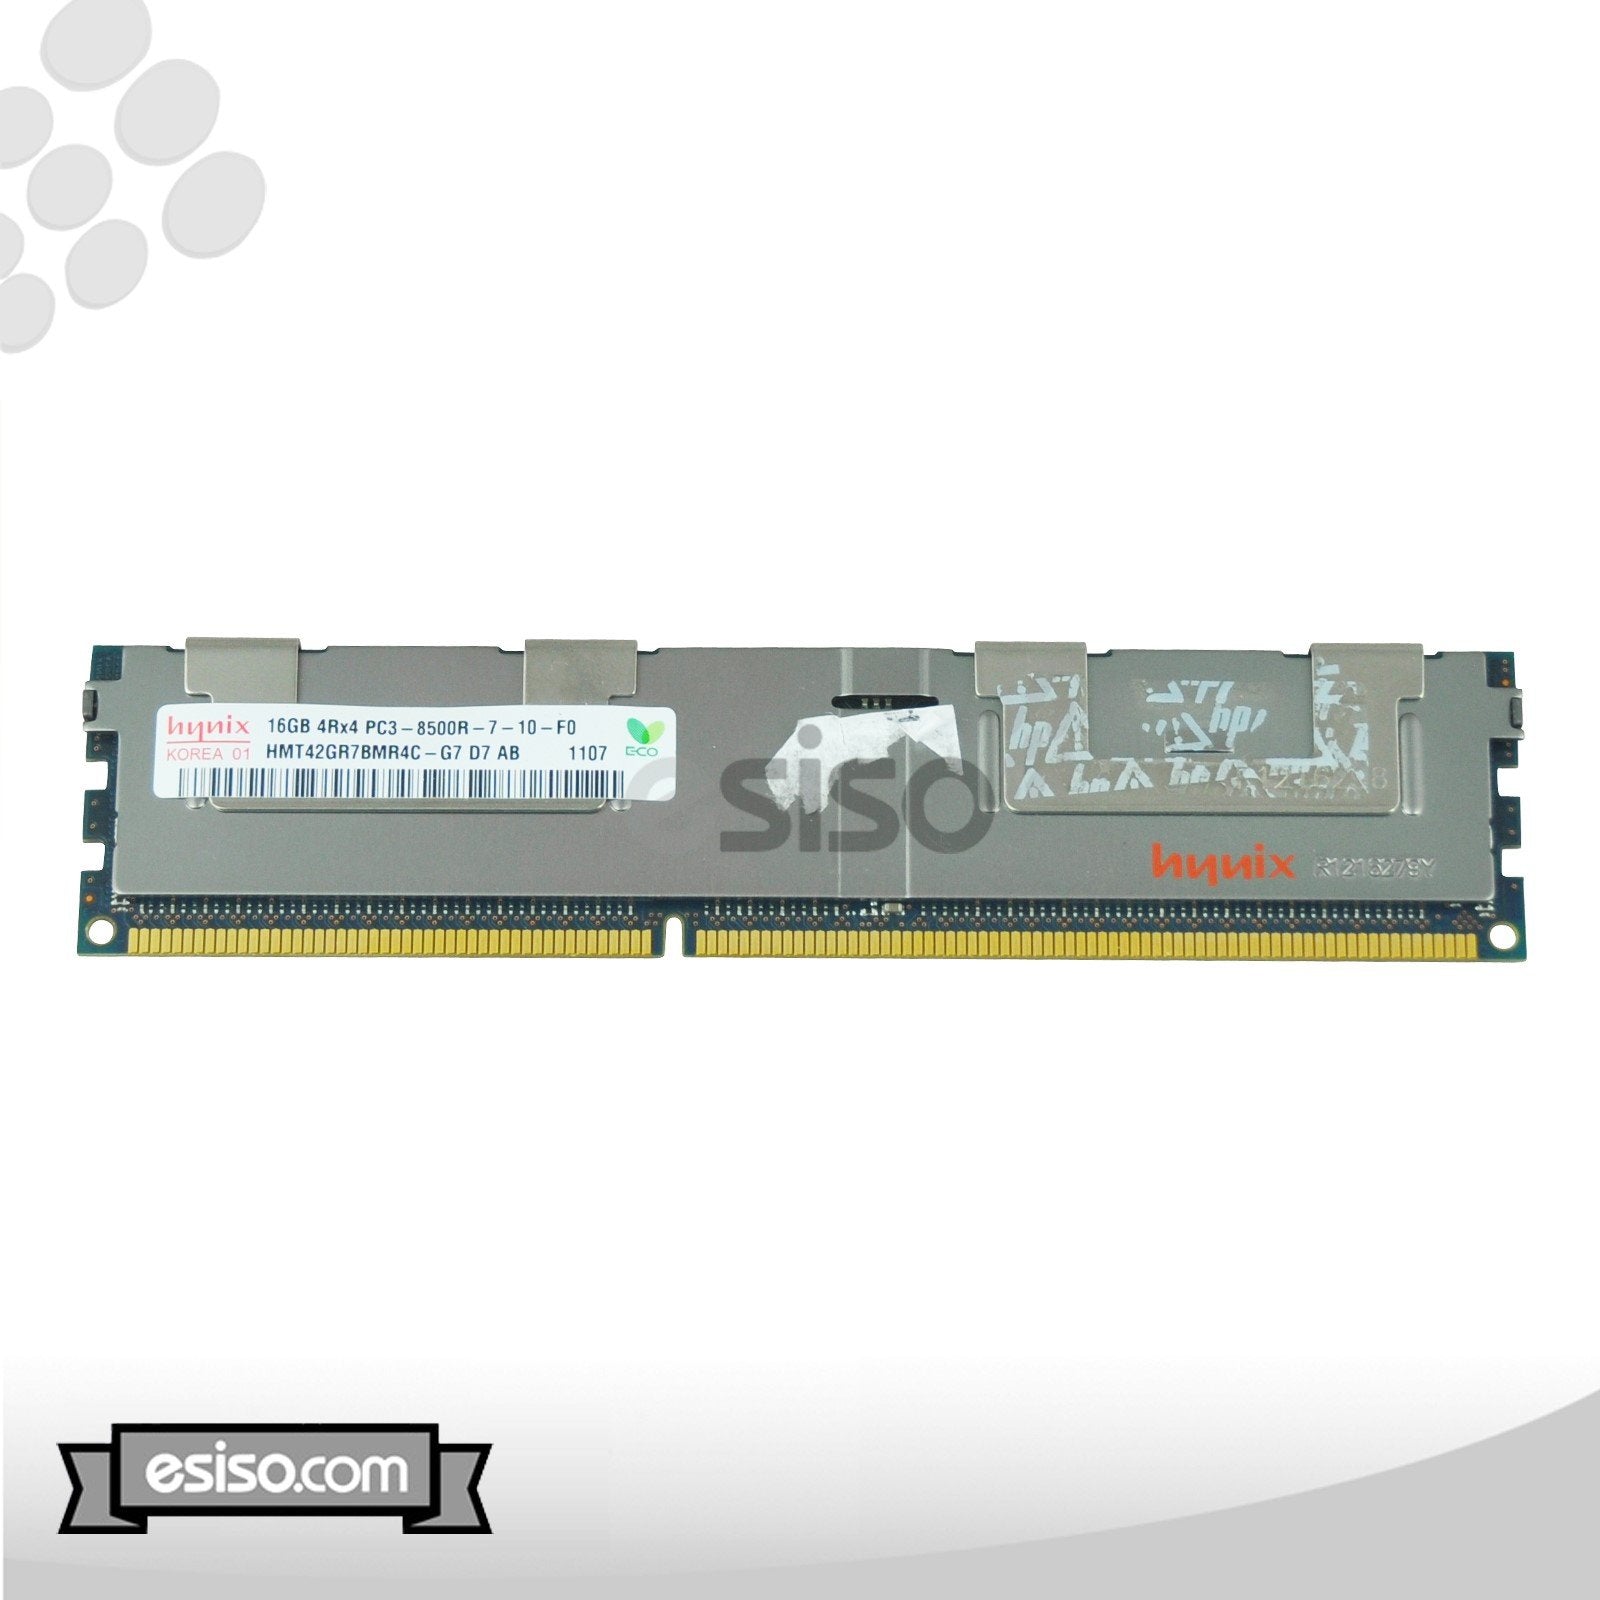 LOT OF 2 HMT42GR7BMR4C-G7 HYNIX 16GB 4RX4 PC3-8500R DDR3 1.5V MEMORY MODULE (2x16GB)